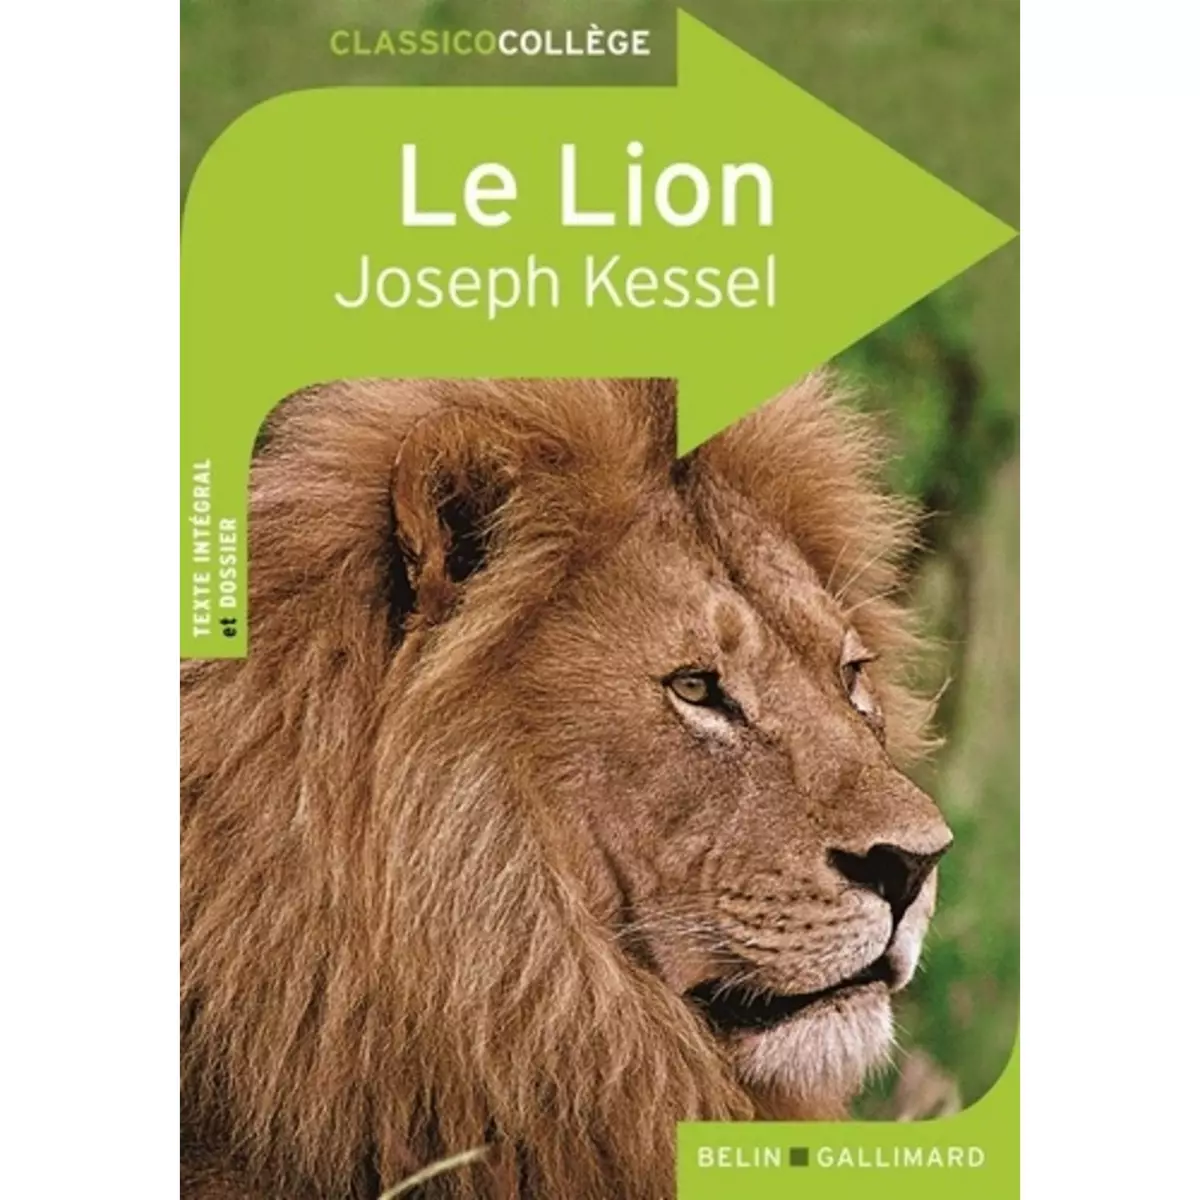  LE LION, Kessel Joseph